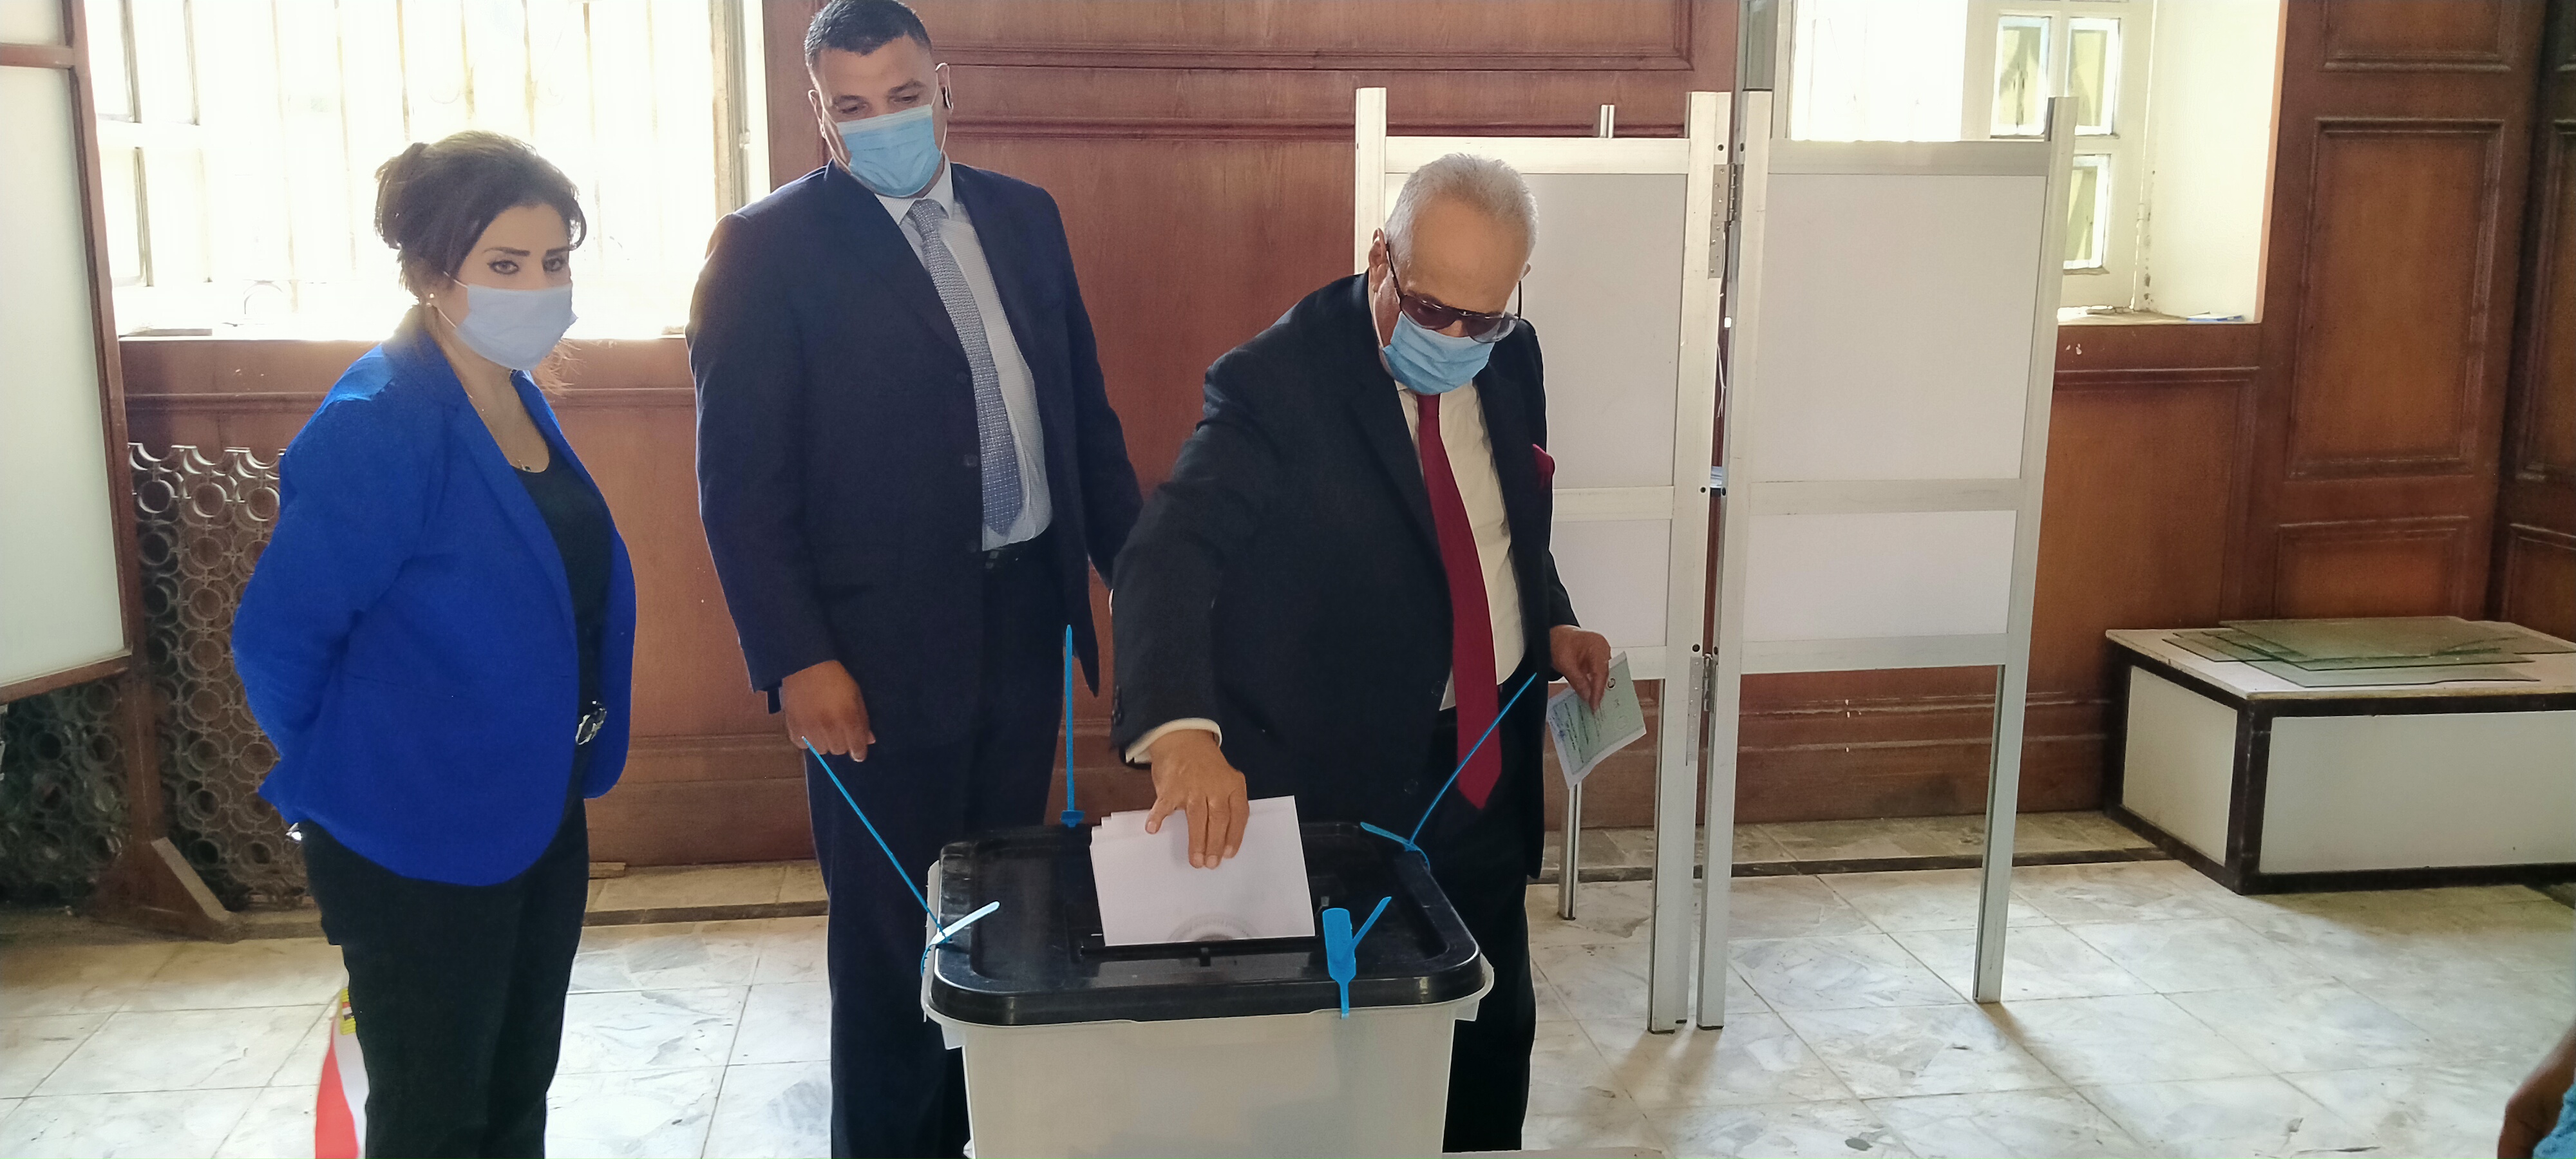 بهاء أبو شقة يدلى بصوته بانتخابات مجلس الشيوخ بالدقى  (3)